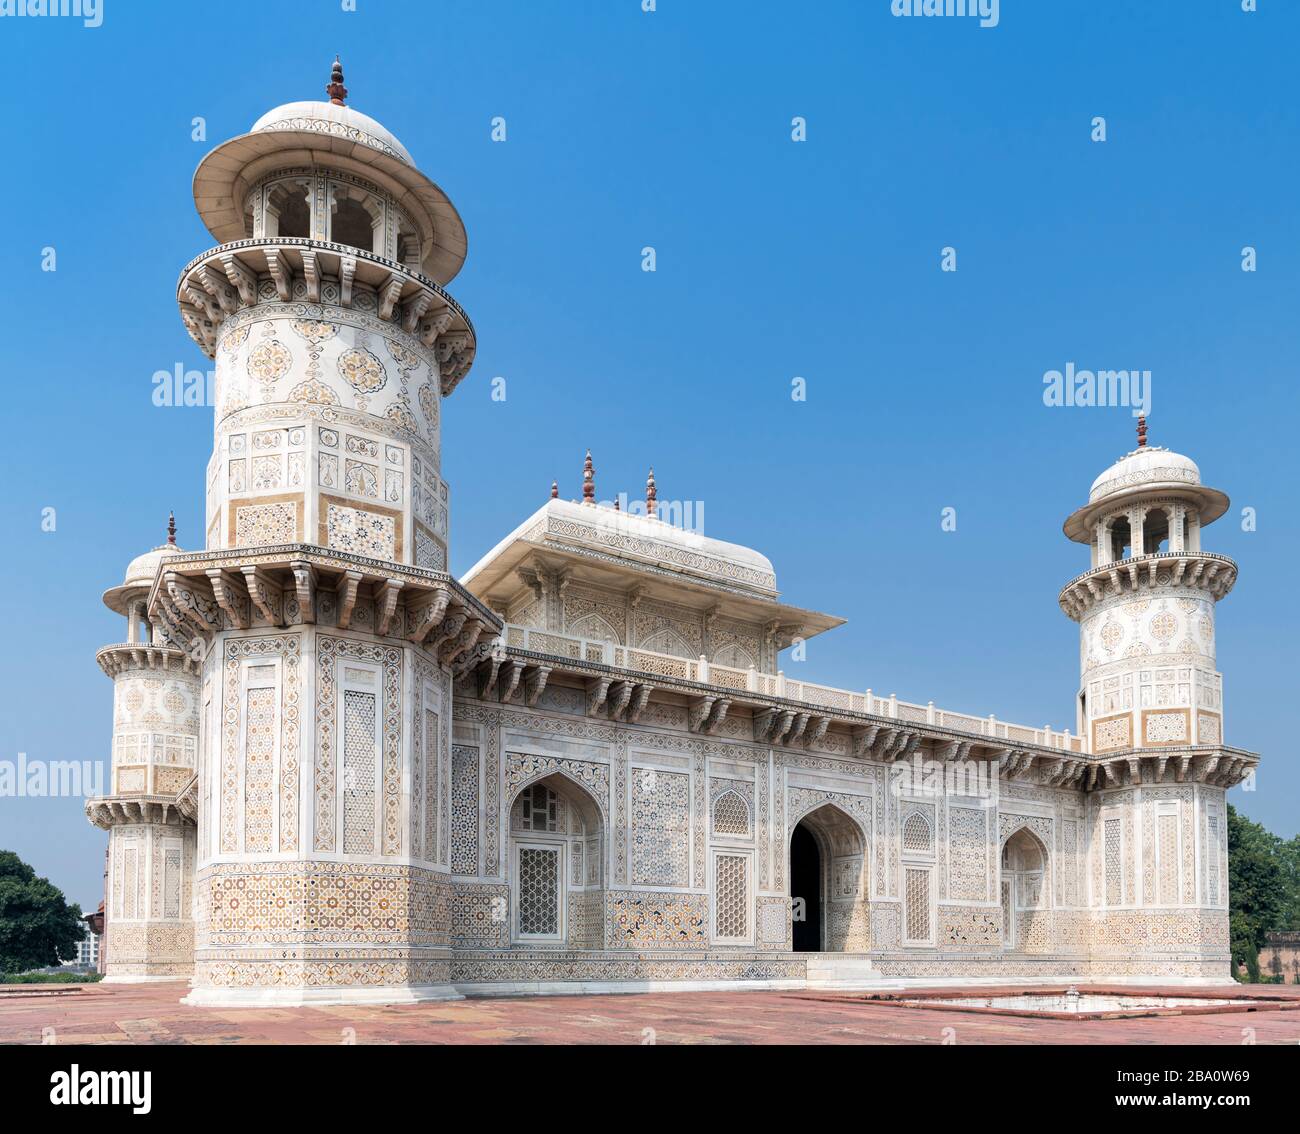 Tumba de Itmad-ud-Daulah (I'timād-ud-Daulah), también conocida como 'Baby Taj', un mausoleo mughal en la ciudad de Agra, Uttar Pradesh, India Foto de stock